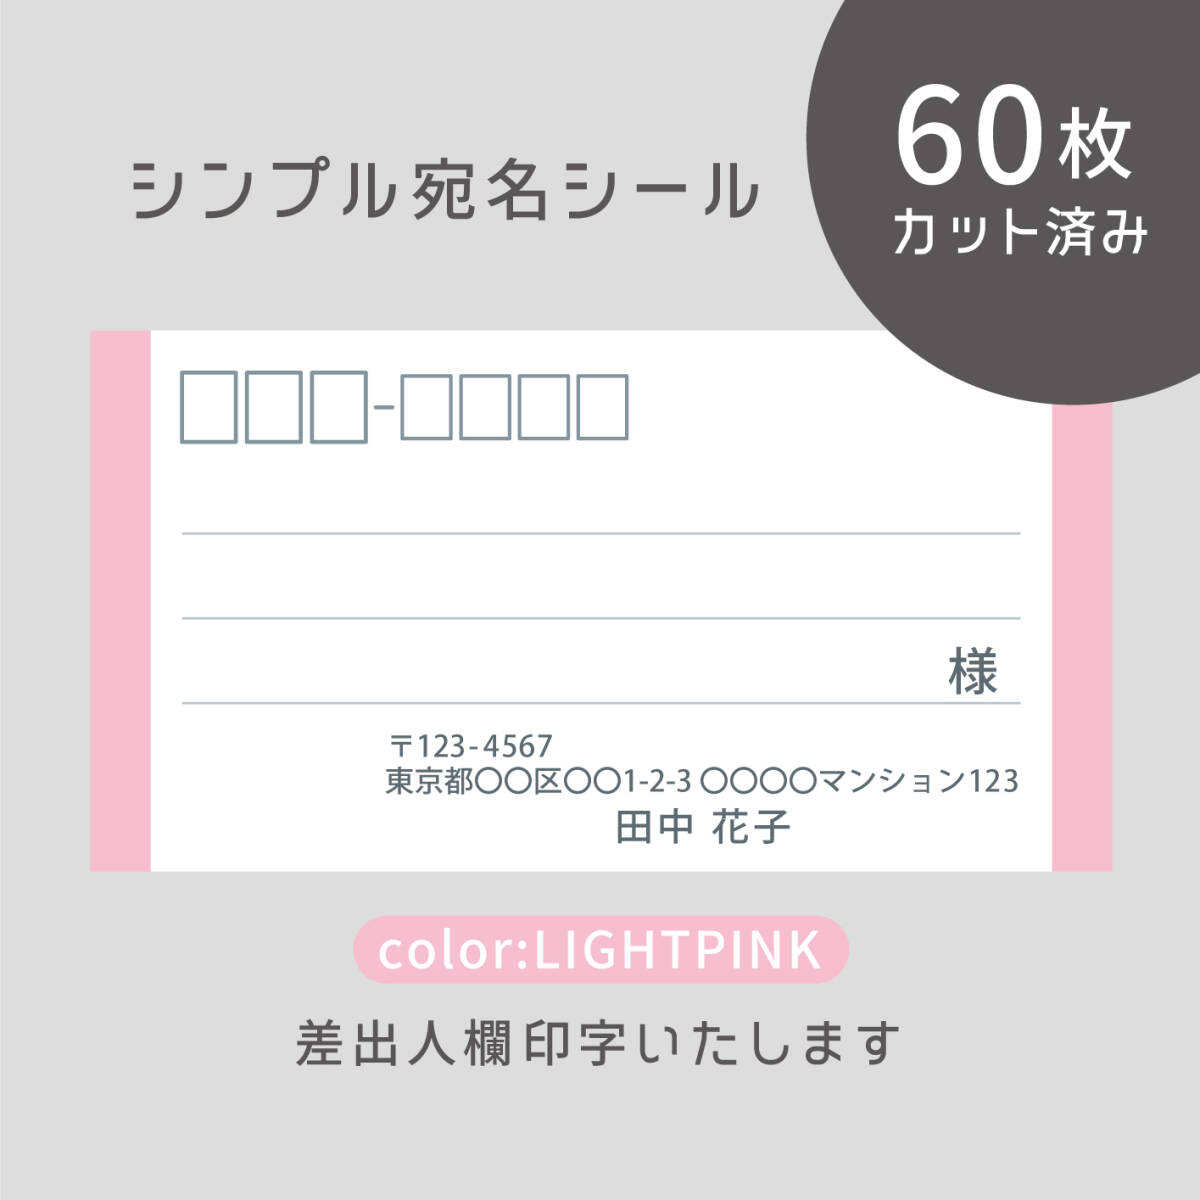 カット済み宛名シール60枚 シンプル・ライトピンク 差出人印字無料 フリマアプリの発送等に_画像1